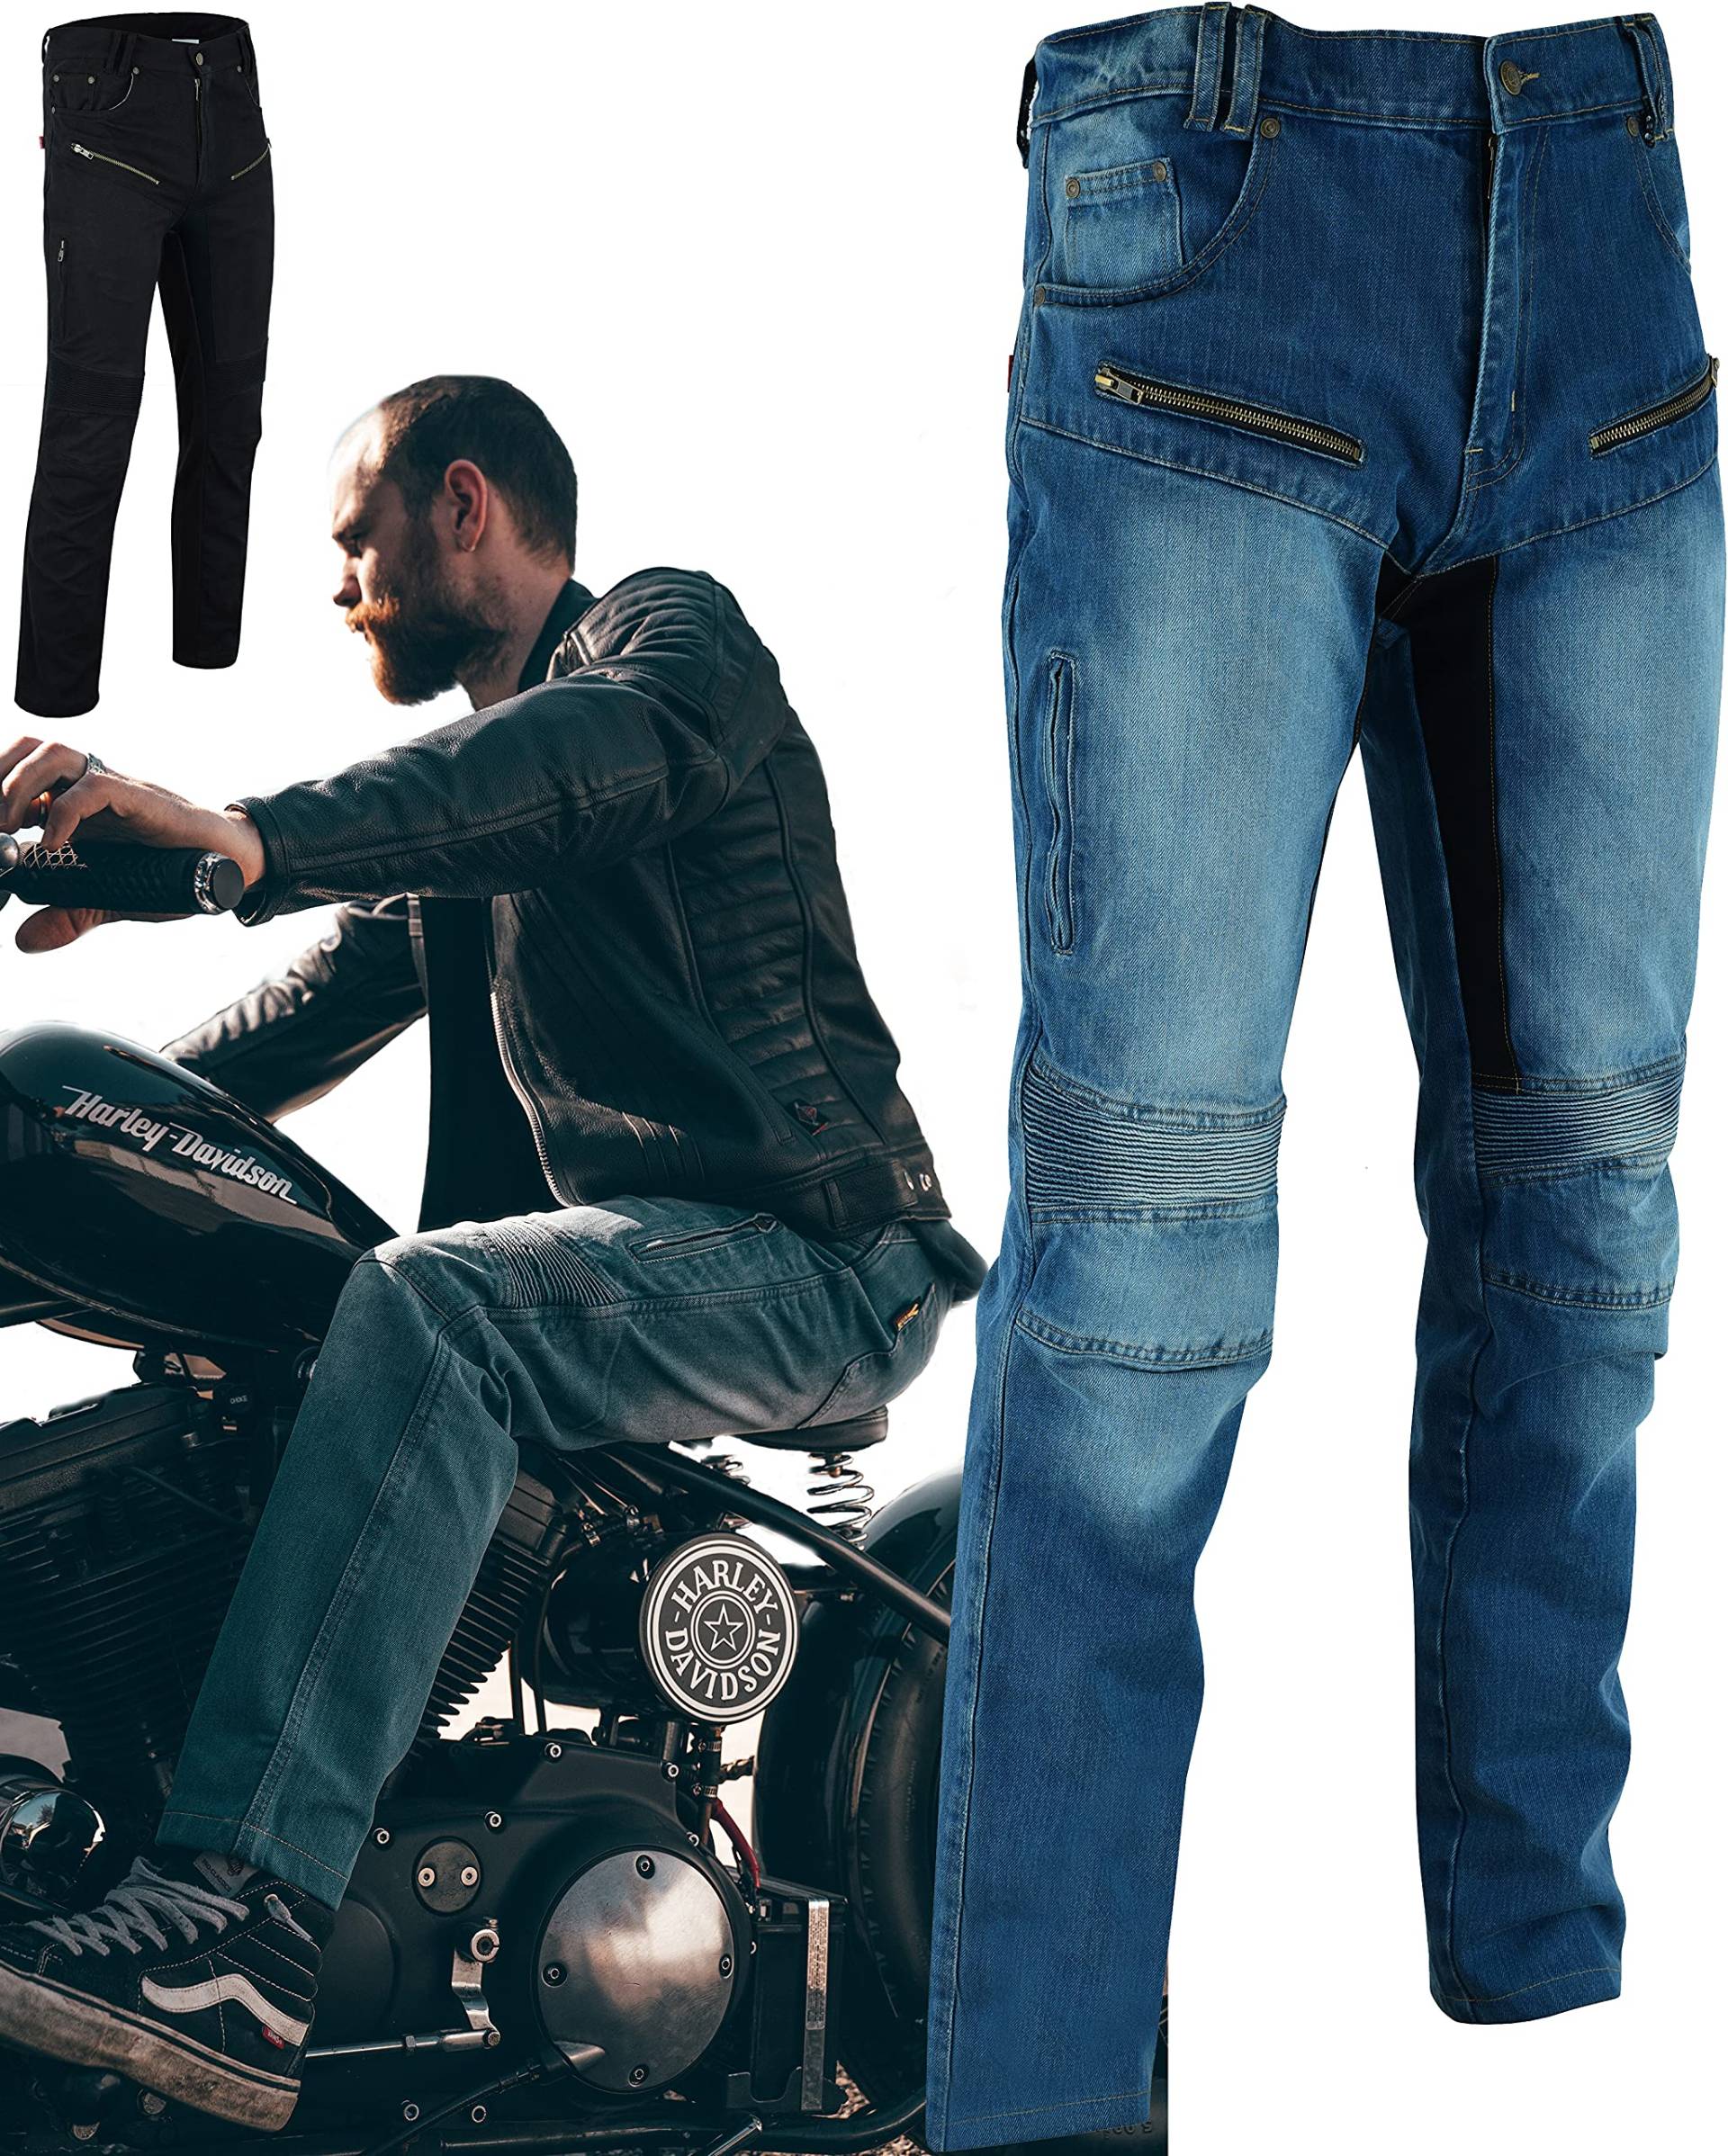 Texpeed Motorradhose mit Protektoren - Herren schwarz Motorrad schützende Jeans - Tapered Fit - Rüstung enthalten (EN 1621-1) - Blau: 2XL Taille/Lang Bein von Texpeed